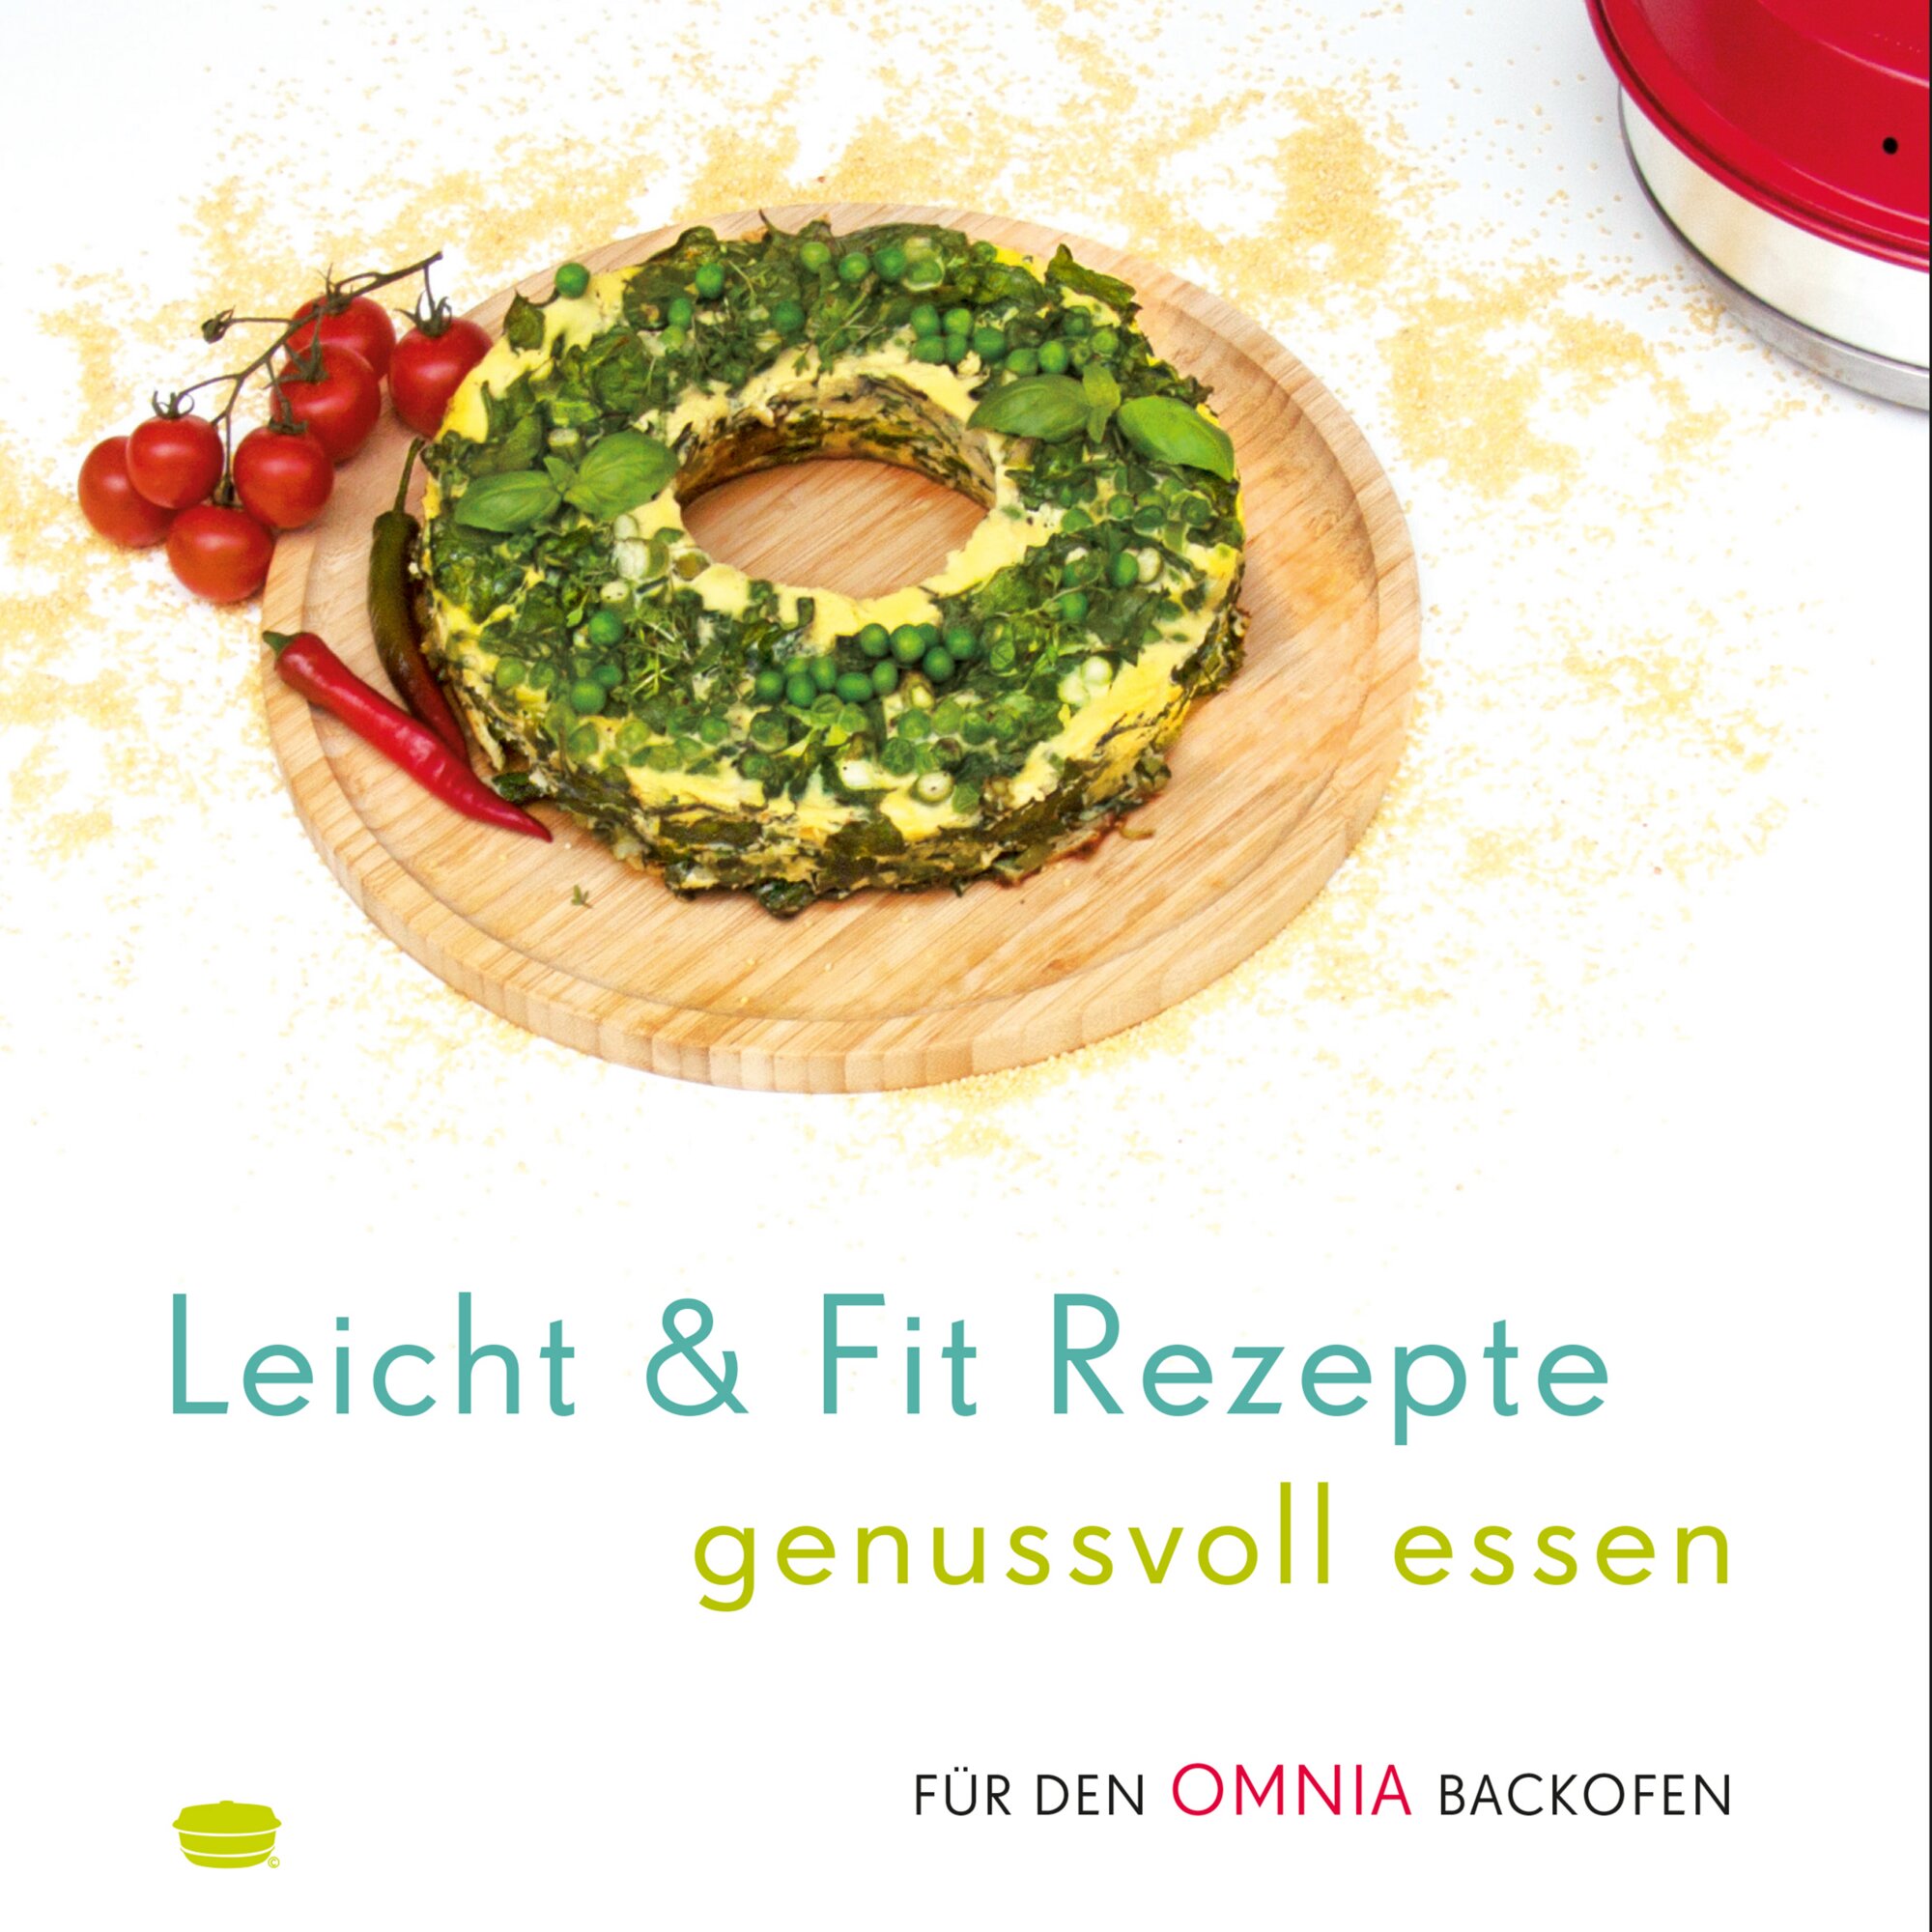 Leicht & Fit Rezepte – genussvoll essen – Rezepte für den Omnia Backofen – Kochbuch